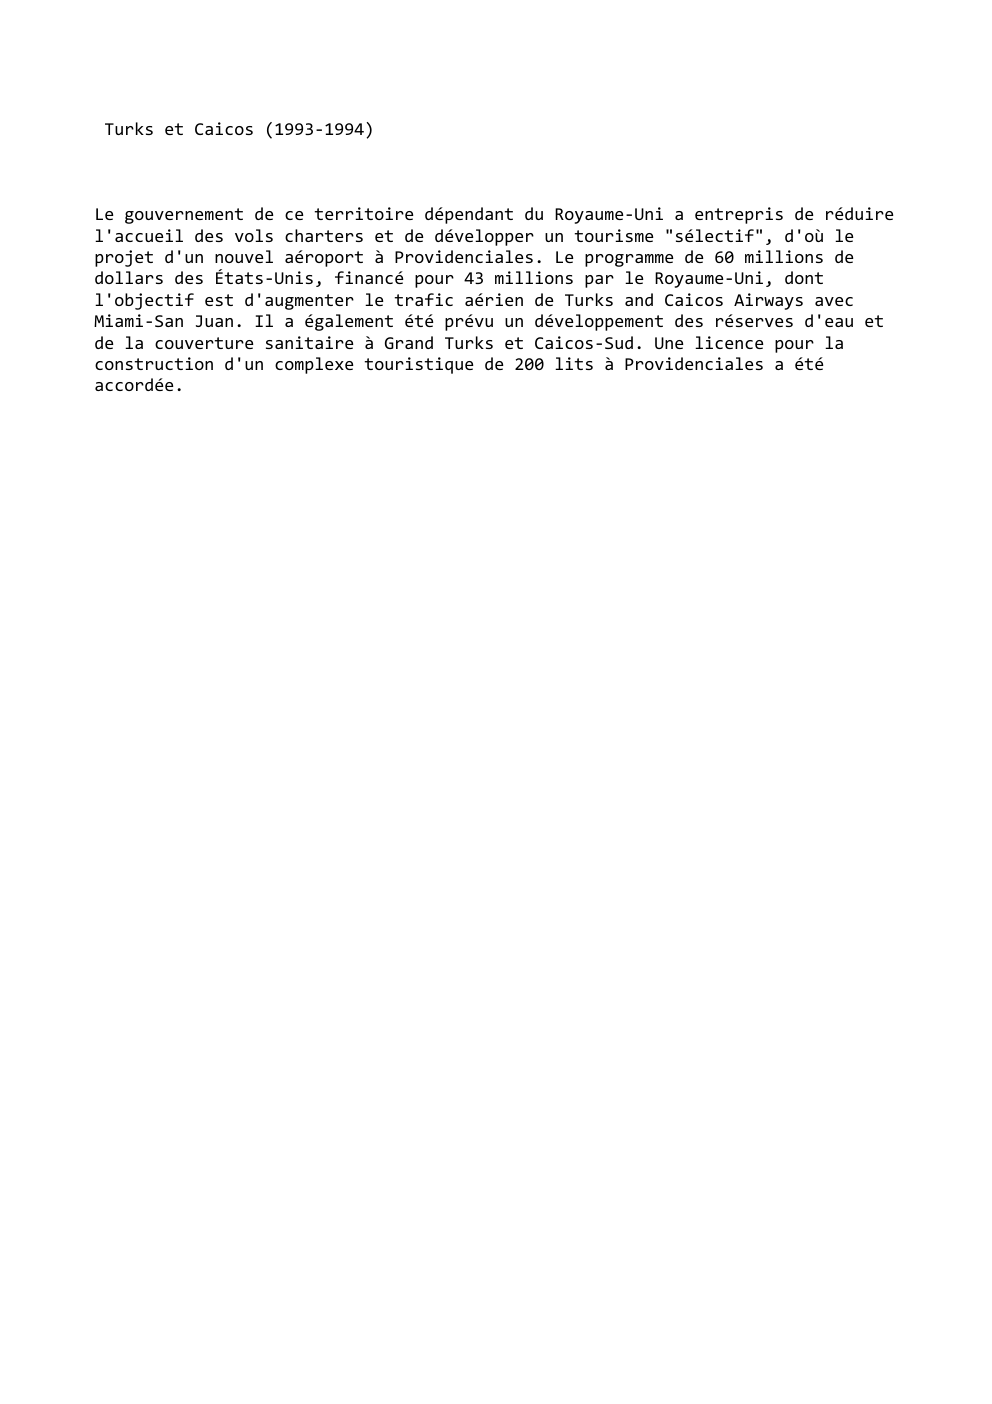 Prévisualisation du document Turks et Caicos (1993-1994)

Le gouvernement de ce territoire dépendant du Royaume-Uni a entrepris de réduire
l'accueil des vols charters...